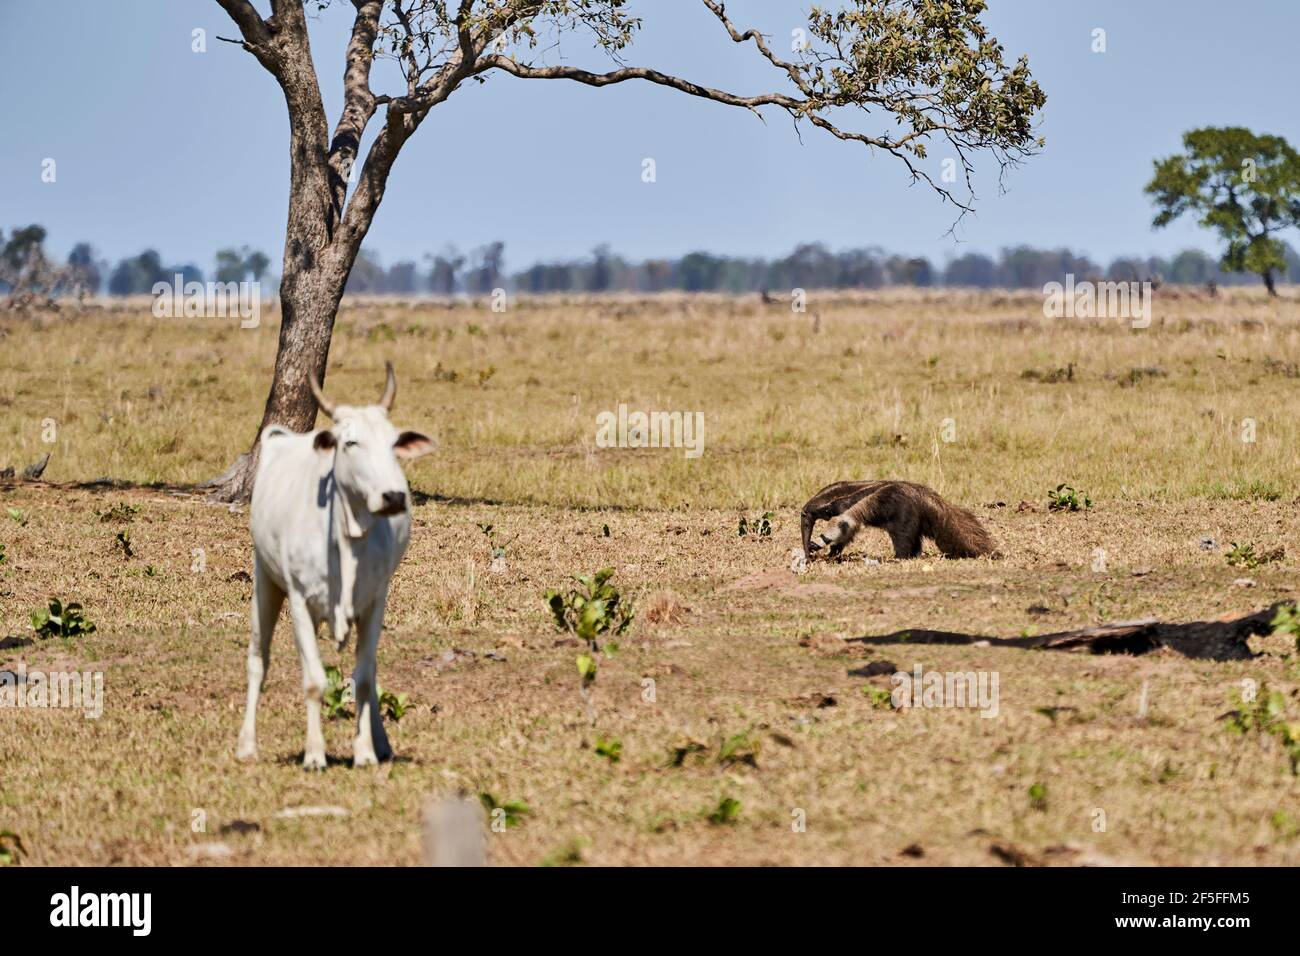 Un'anteater gigante che cammina su un prato di una fattoria nel Pantanal meridionale. Myrmecophaga tridactyla, anche orso formico, è un mammifero insettivoro nativo a. Foto Stock